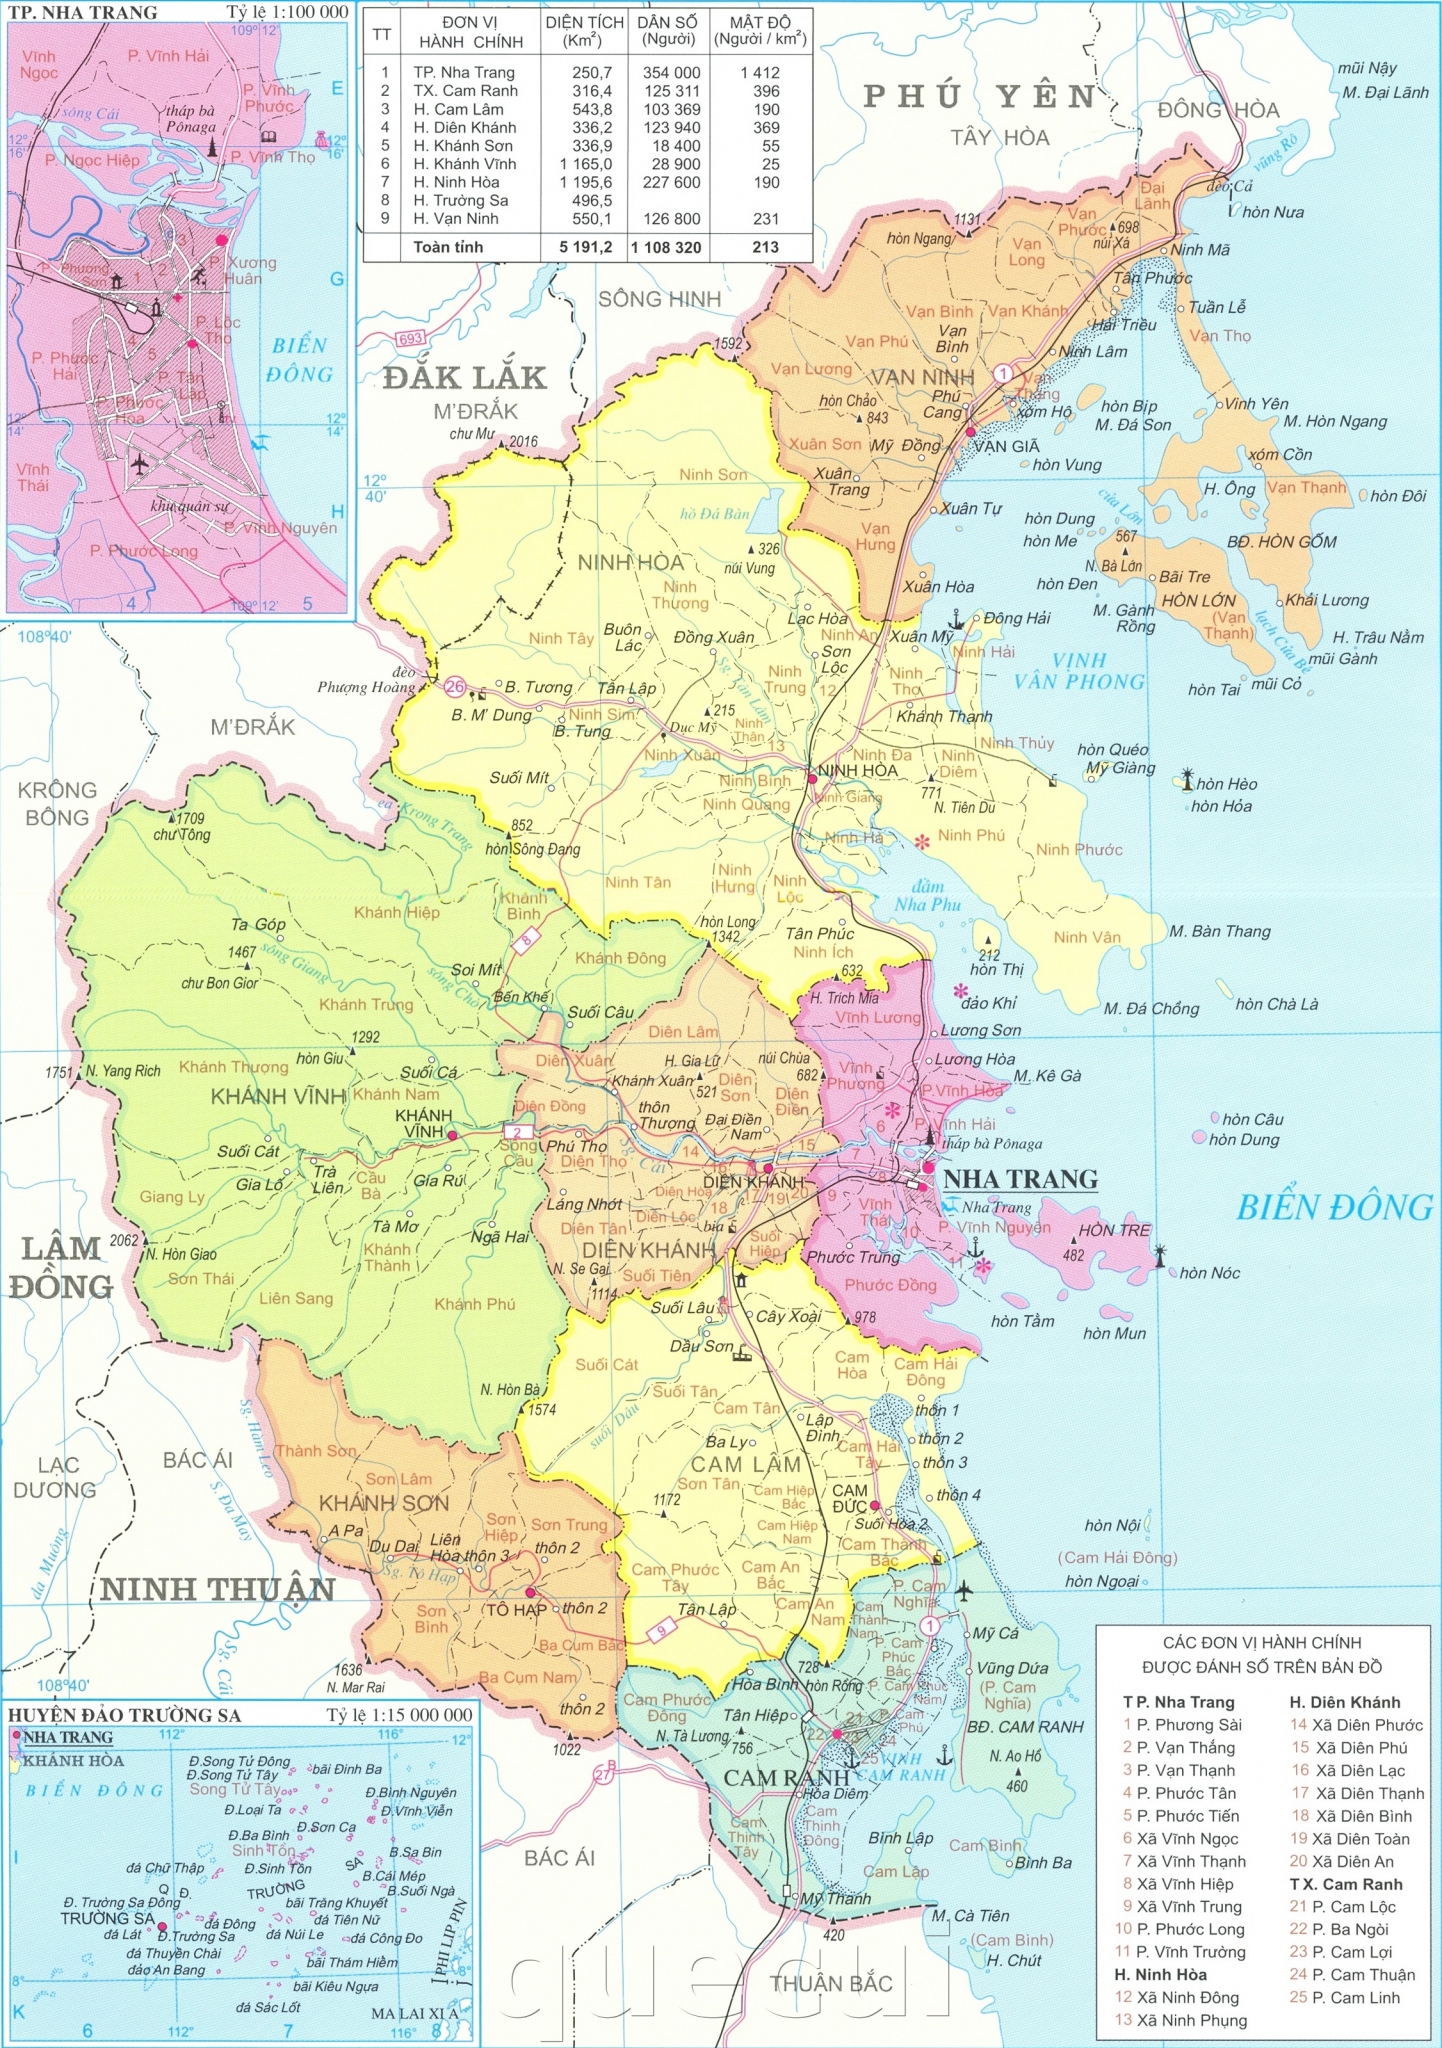 Bản đồ hành chính TP Nha Trang là công cụ hữu ích giúp bạn nắm rõ các giới hạn địa lý và phân cấp hành chính của thành phố biển xinh đẹp này. Bạn sẽ biết được phạm vi quản lý của từng đơn vị hành chính, thông tin liên lạc với các cơ quan chính quyền, cũng như tìm hiểu được lịch trình chuyến công tác của mình một cách chính xác và nhanh chóng.